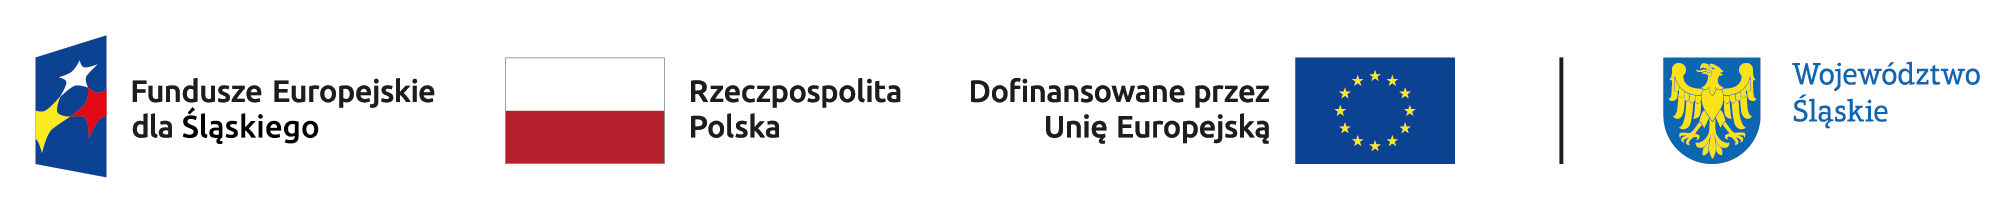 Projekt „Aktywizacja osób bezrobotnych zarejestrowanych w Powiatowym Urzędzie Pracy w Dąbrowie Górniczej